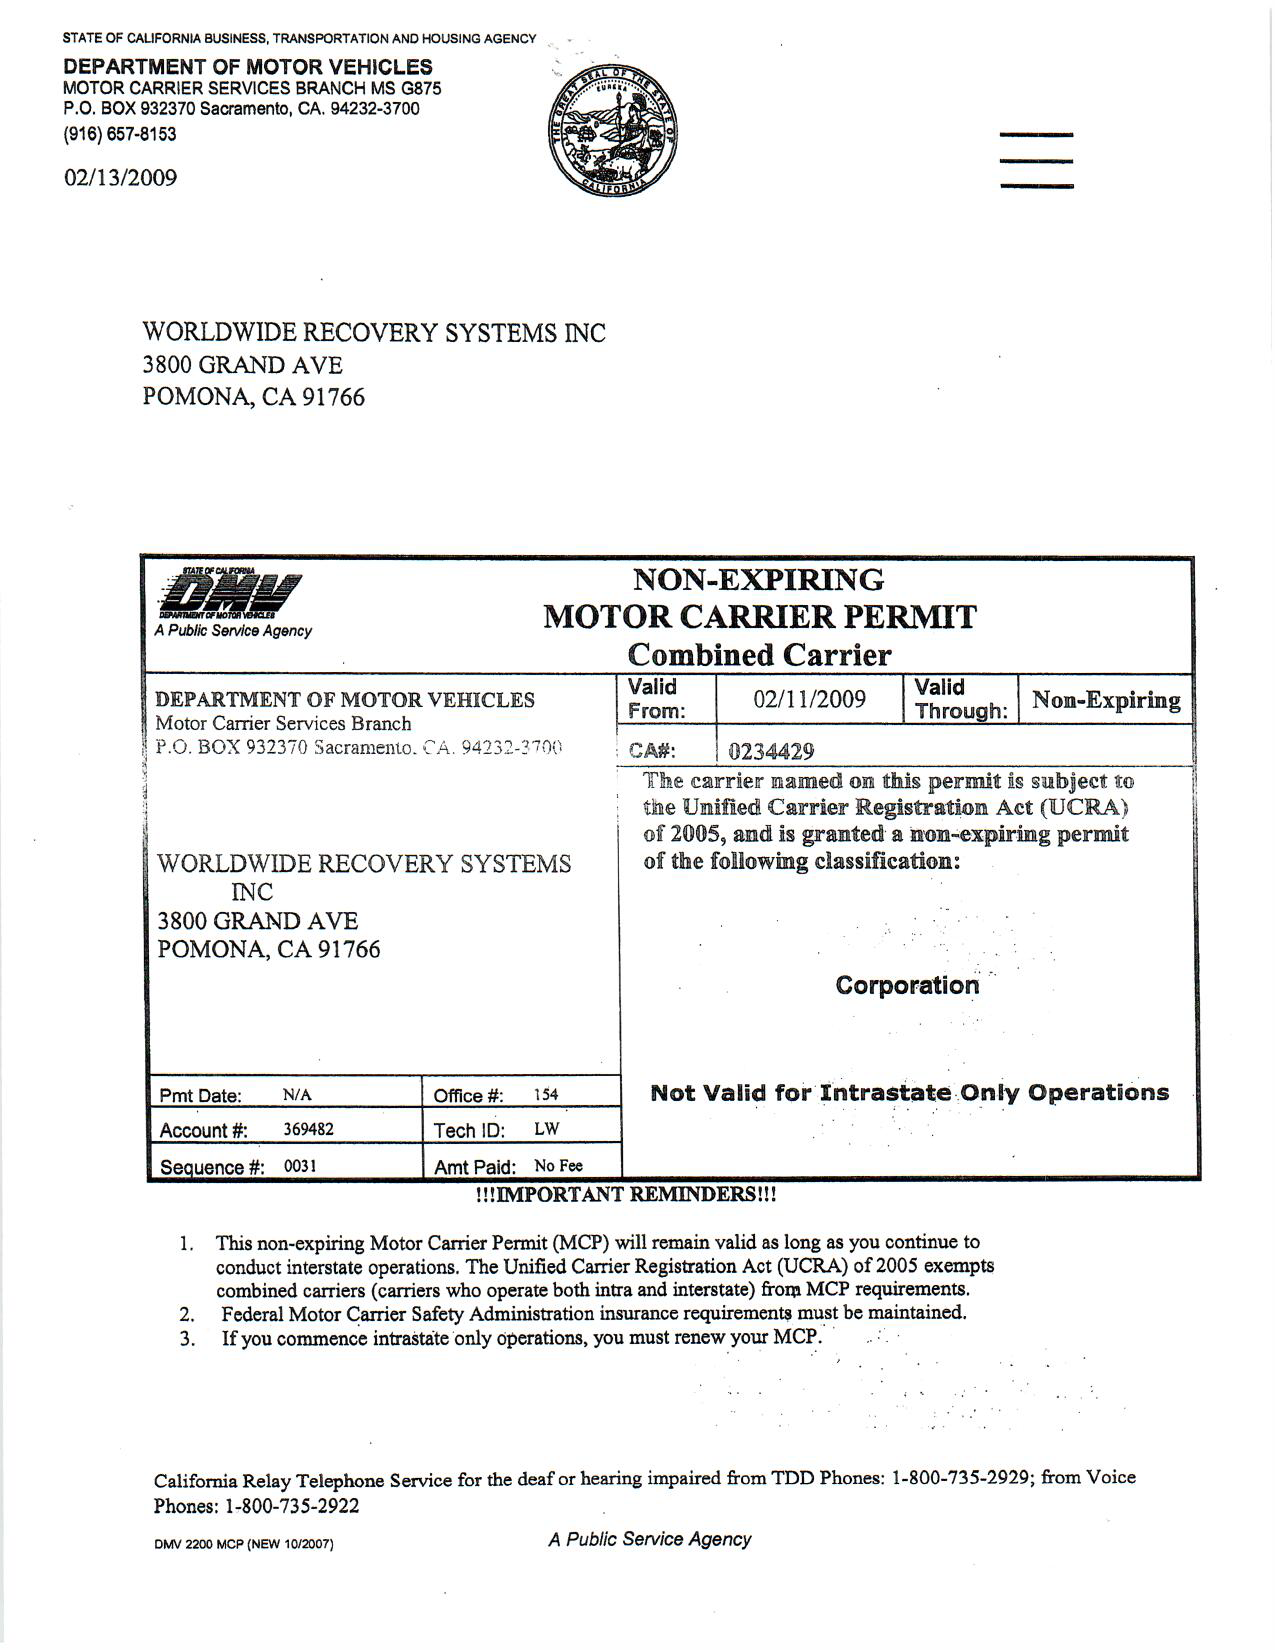 DMV Motor Carrier Permit